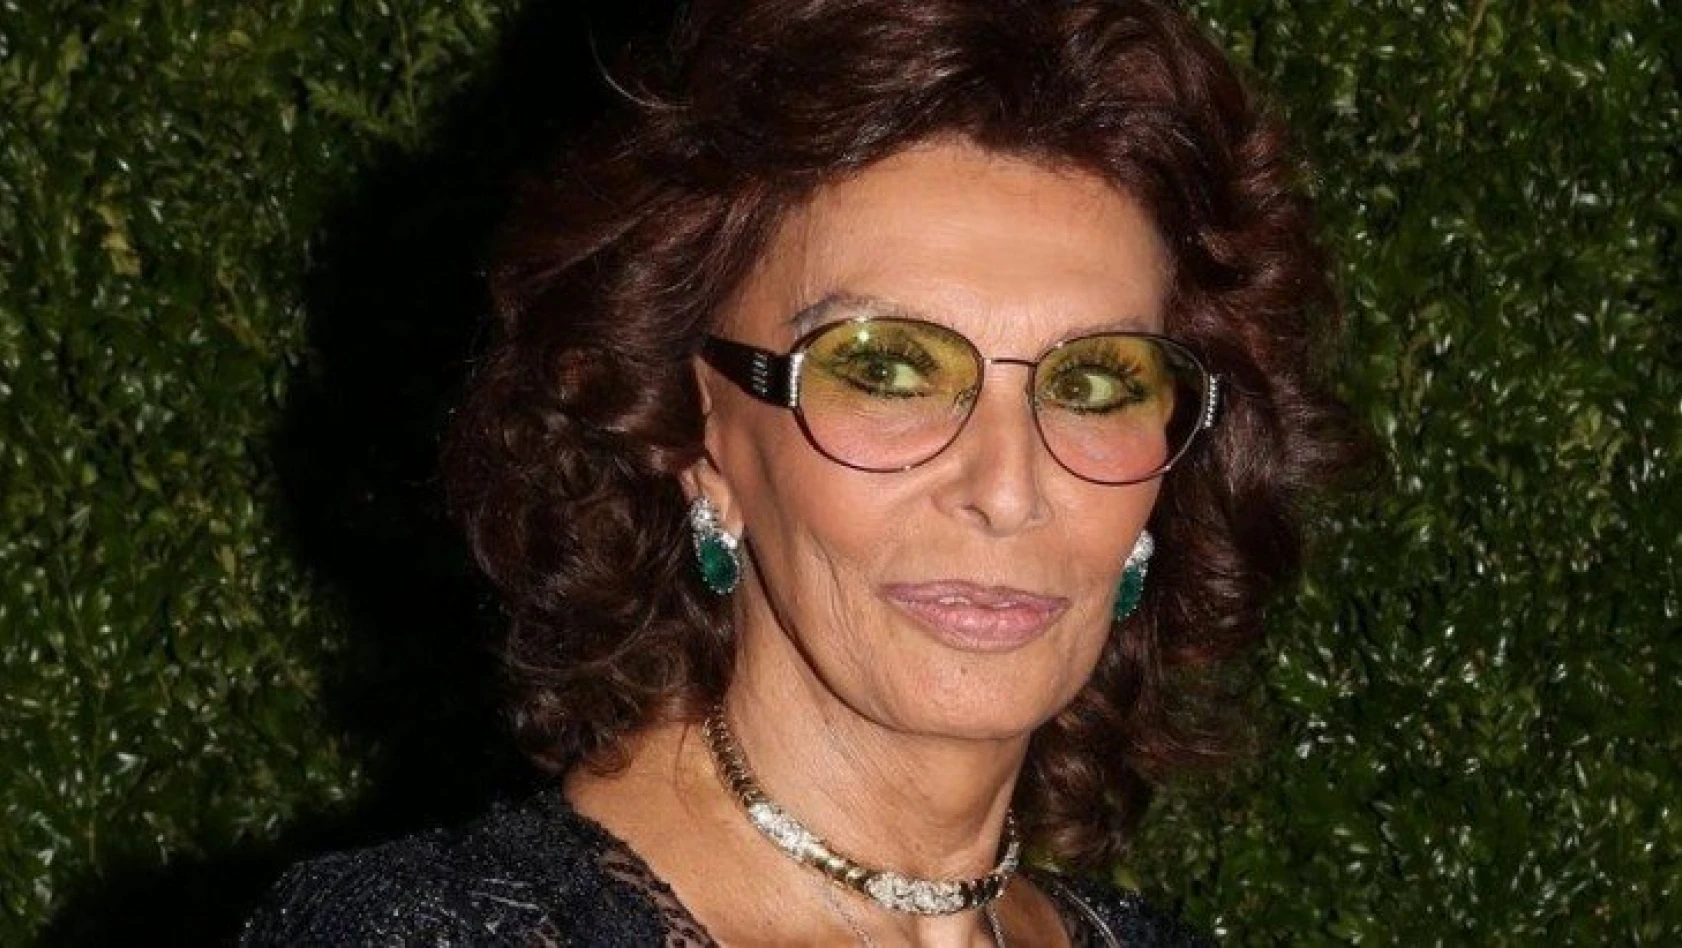 Oyuncu Sophia Loren, en büyük pişmanlığını açıkladı